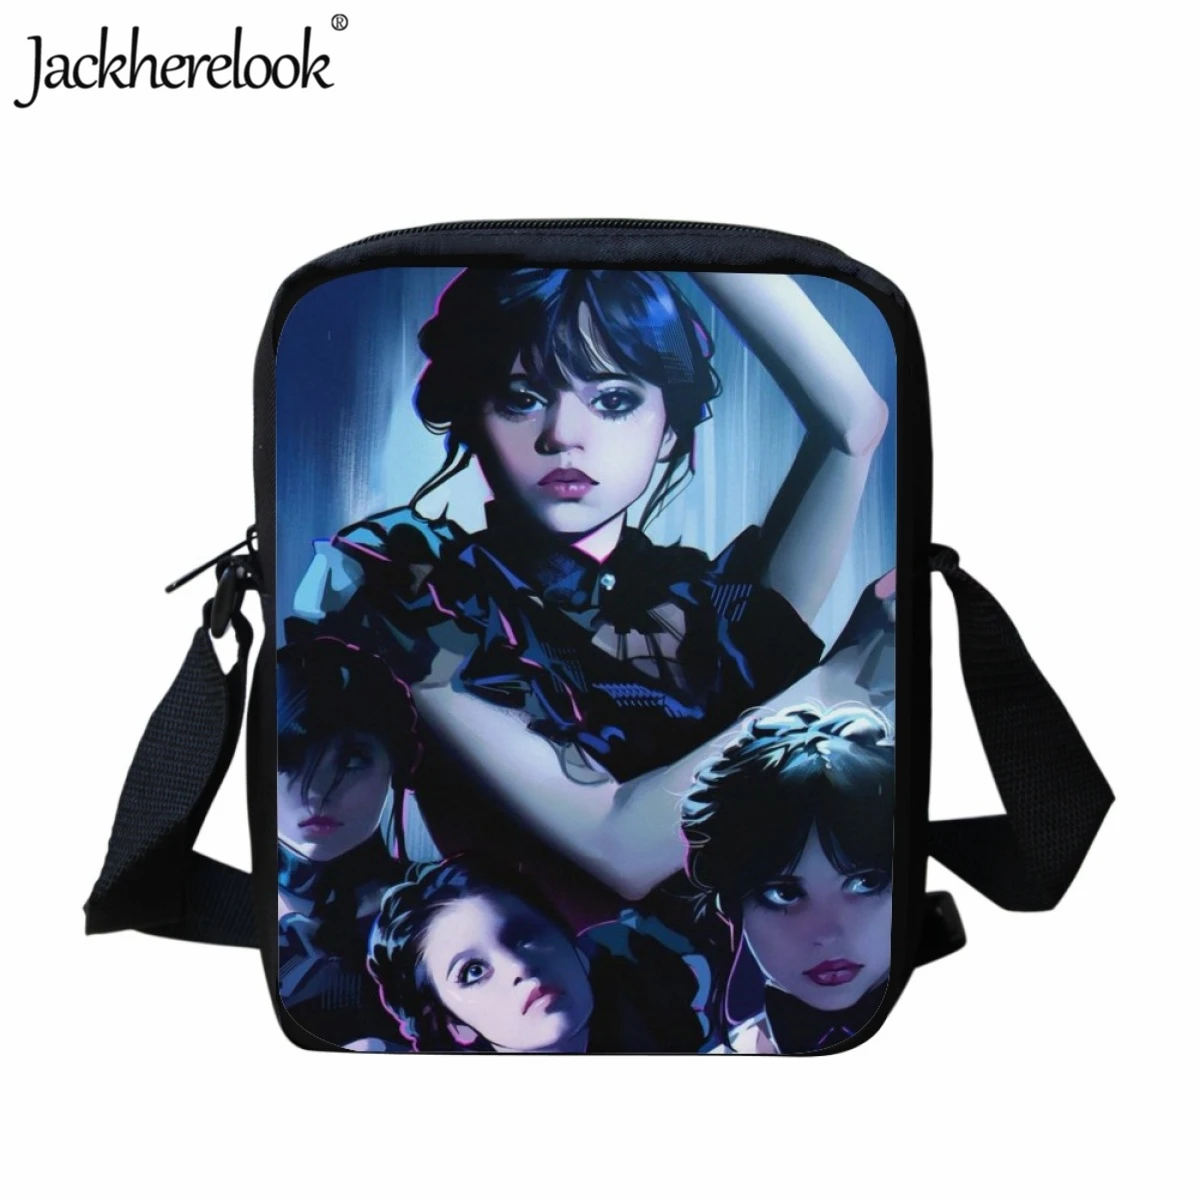 Jackherelook Школьная сумка для подростков с принтом Среды Адамс, Маленькая вместительная Модная Женская сумка через плечо, Повседневная дорожная сумка0